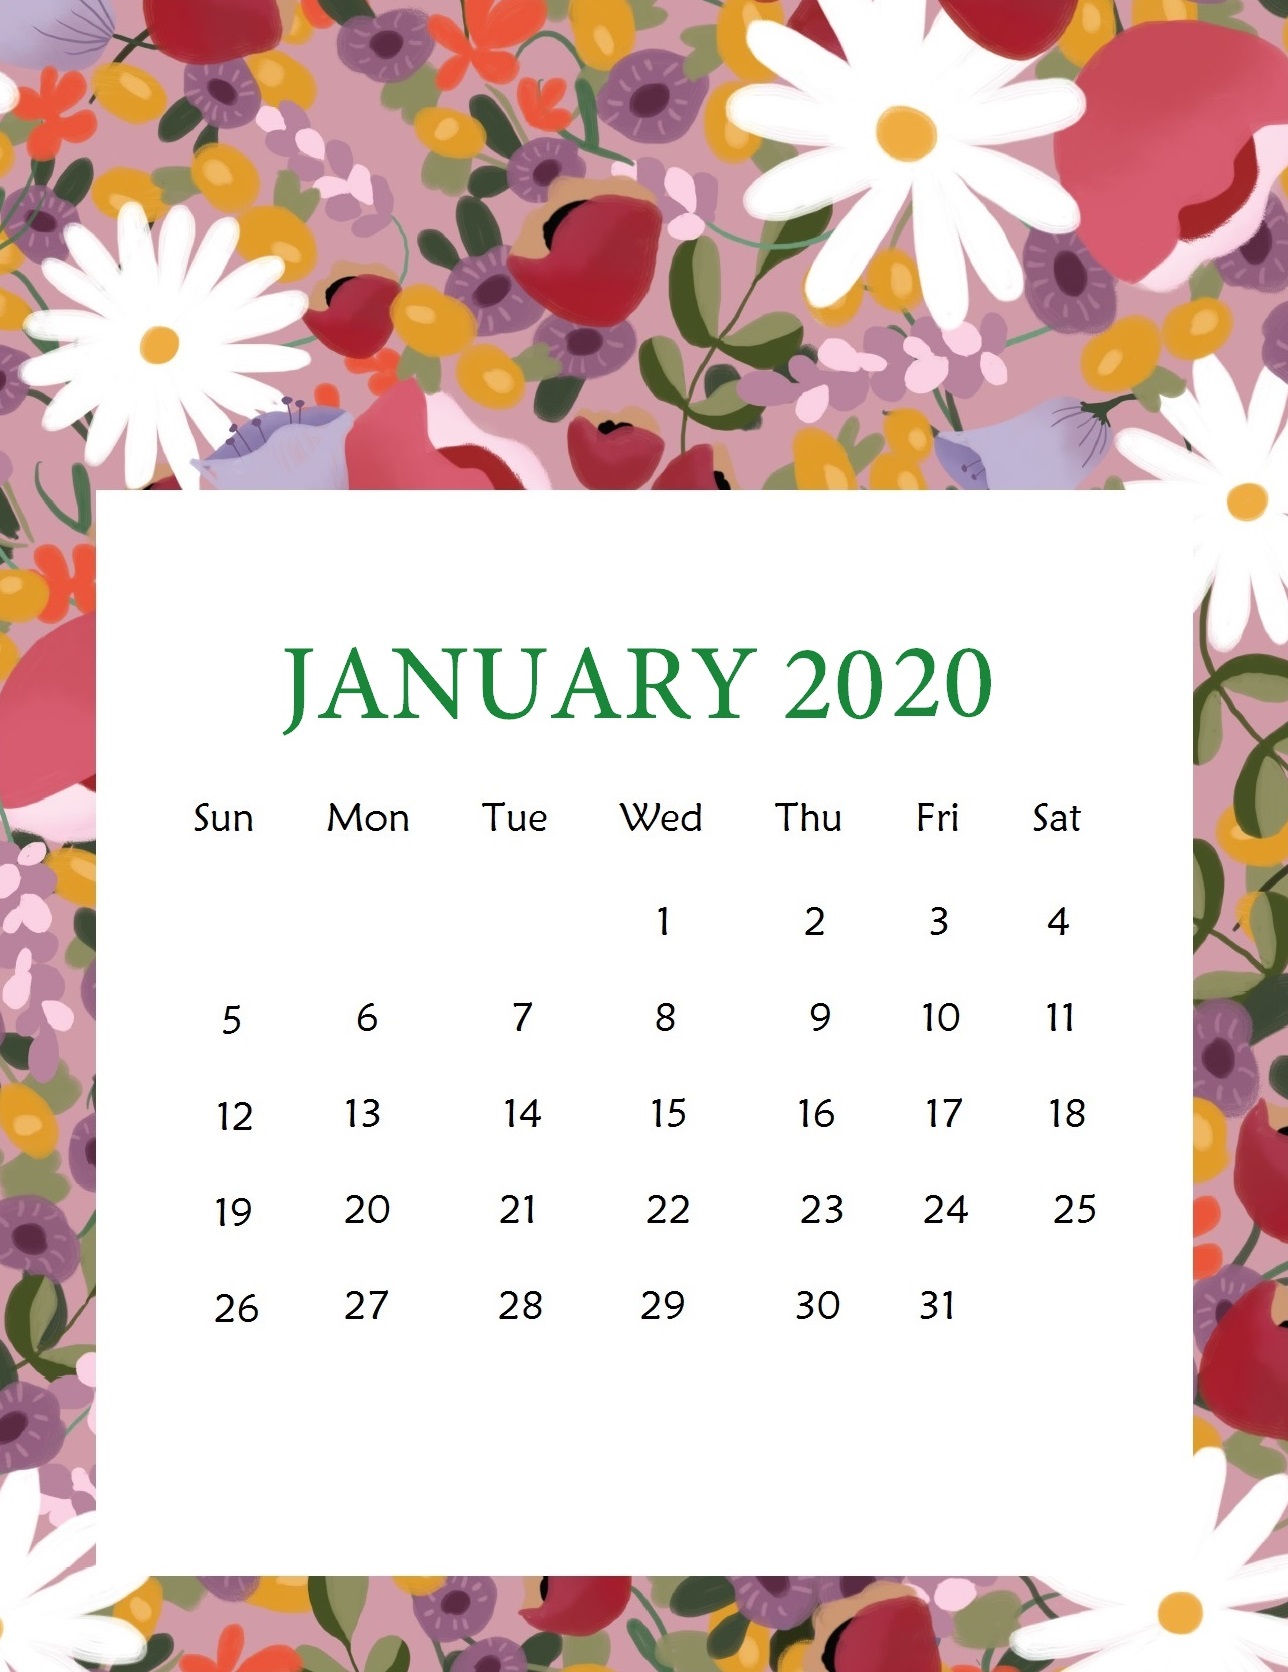 January 2020 Cute Calendar Wallpaper